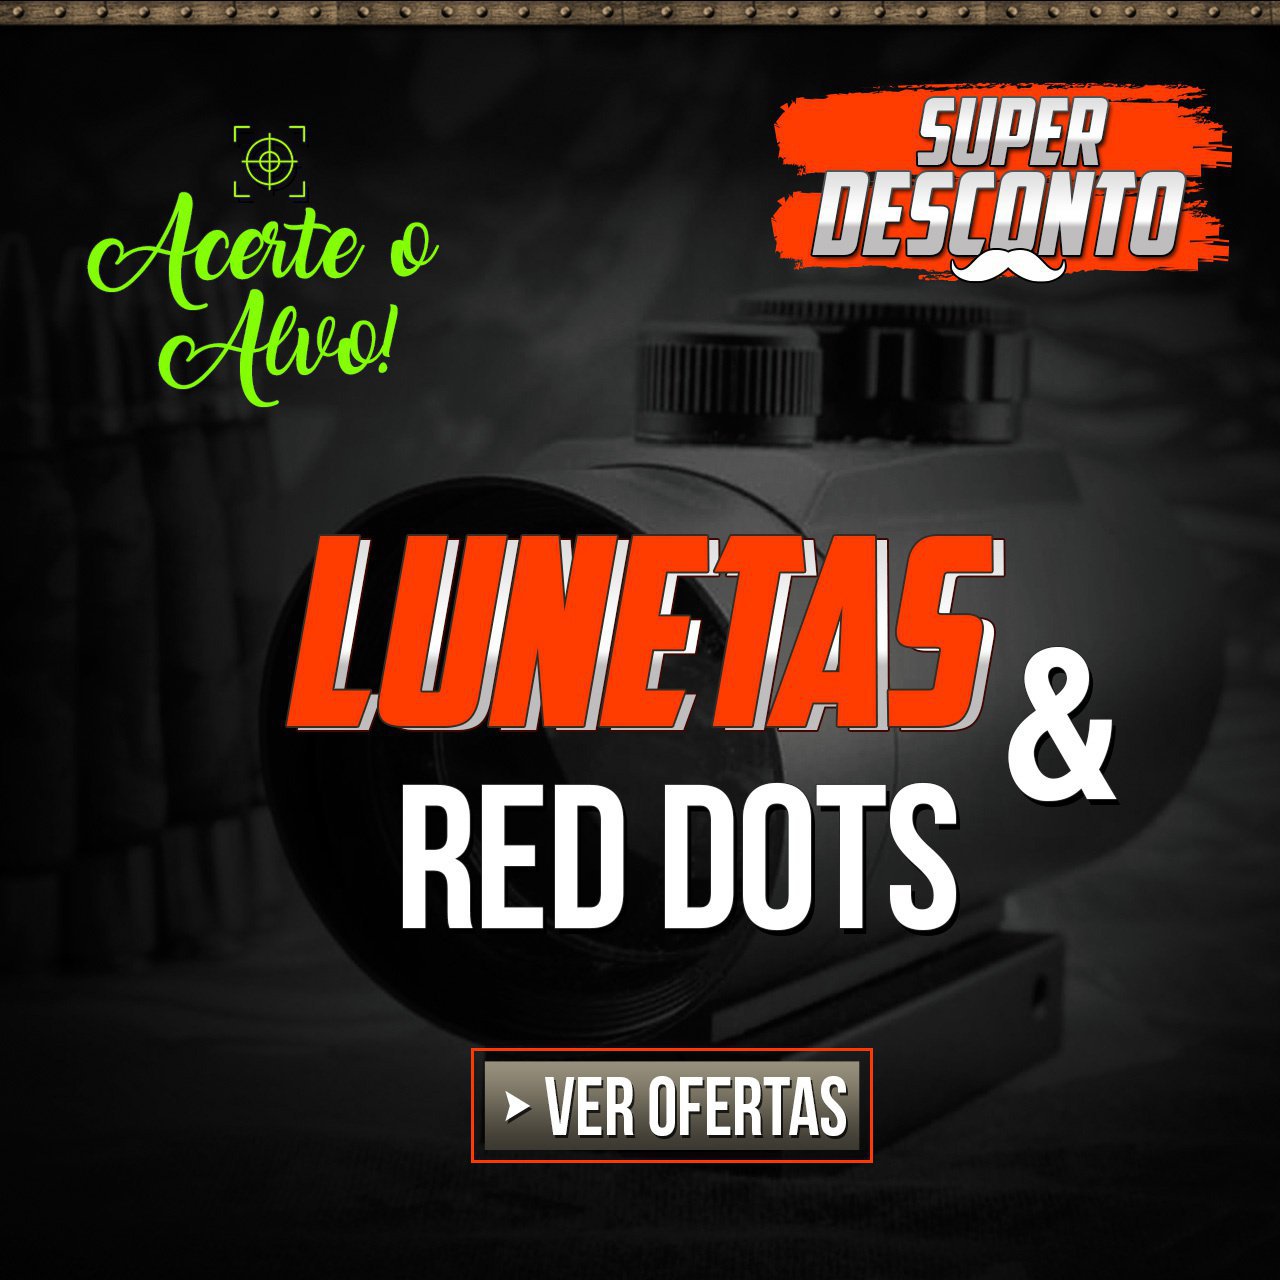 ACERTE O ALVO - Lunetas & Red Dots, com super desconto